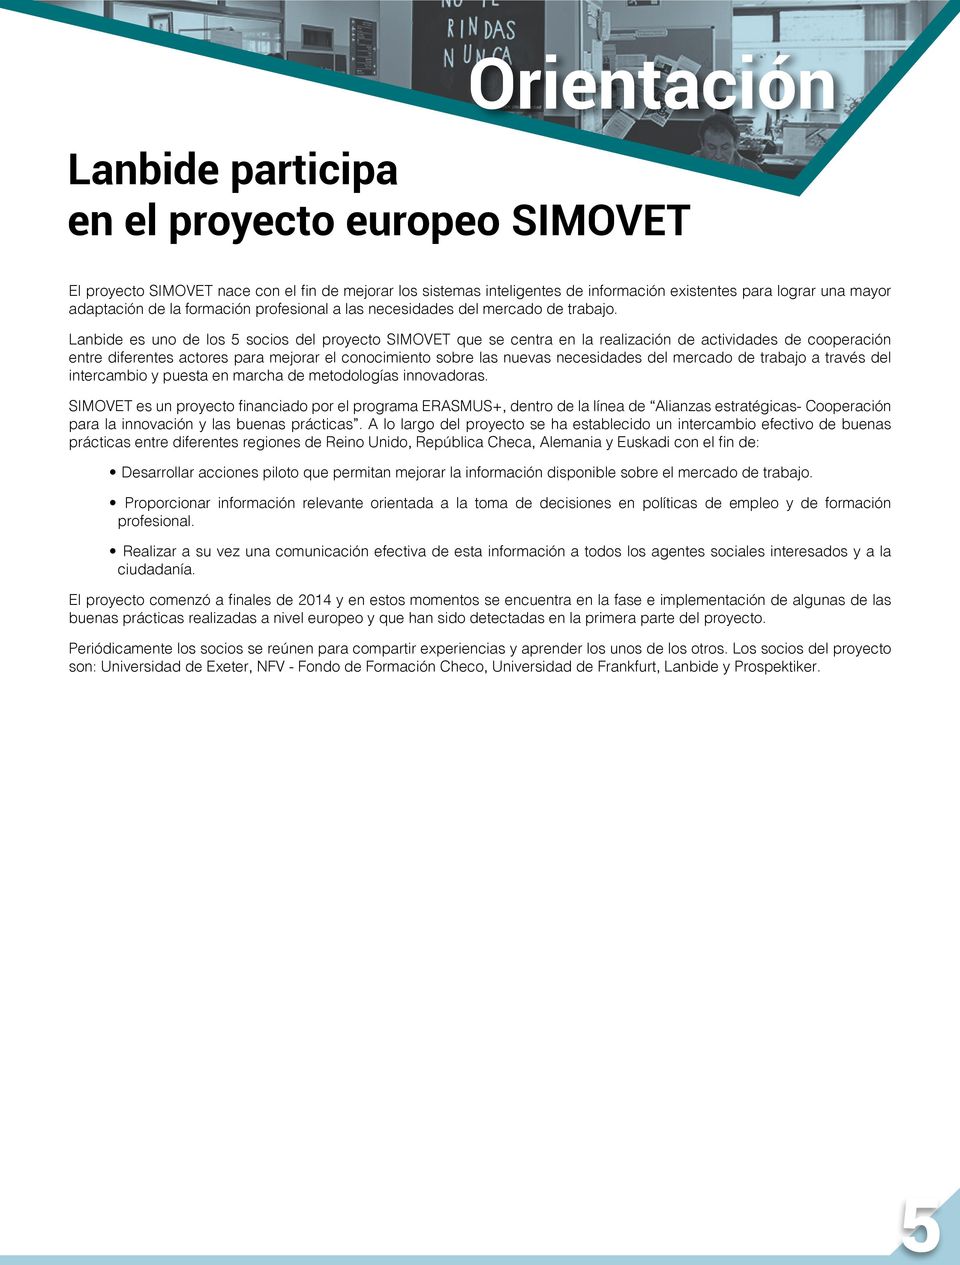 Lanbide es uno de los 5 socios del proyecto SIMOVET que se centra en la realización de actividades de cooperación entre diferentes actores para mejorar el conocimiento sobre las nuevas necesidades